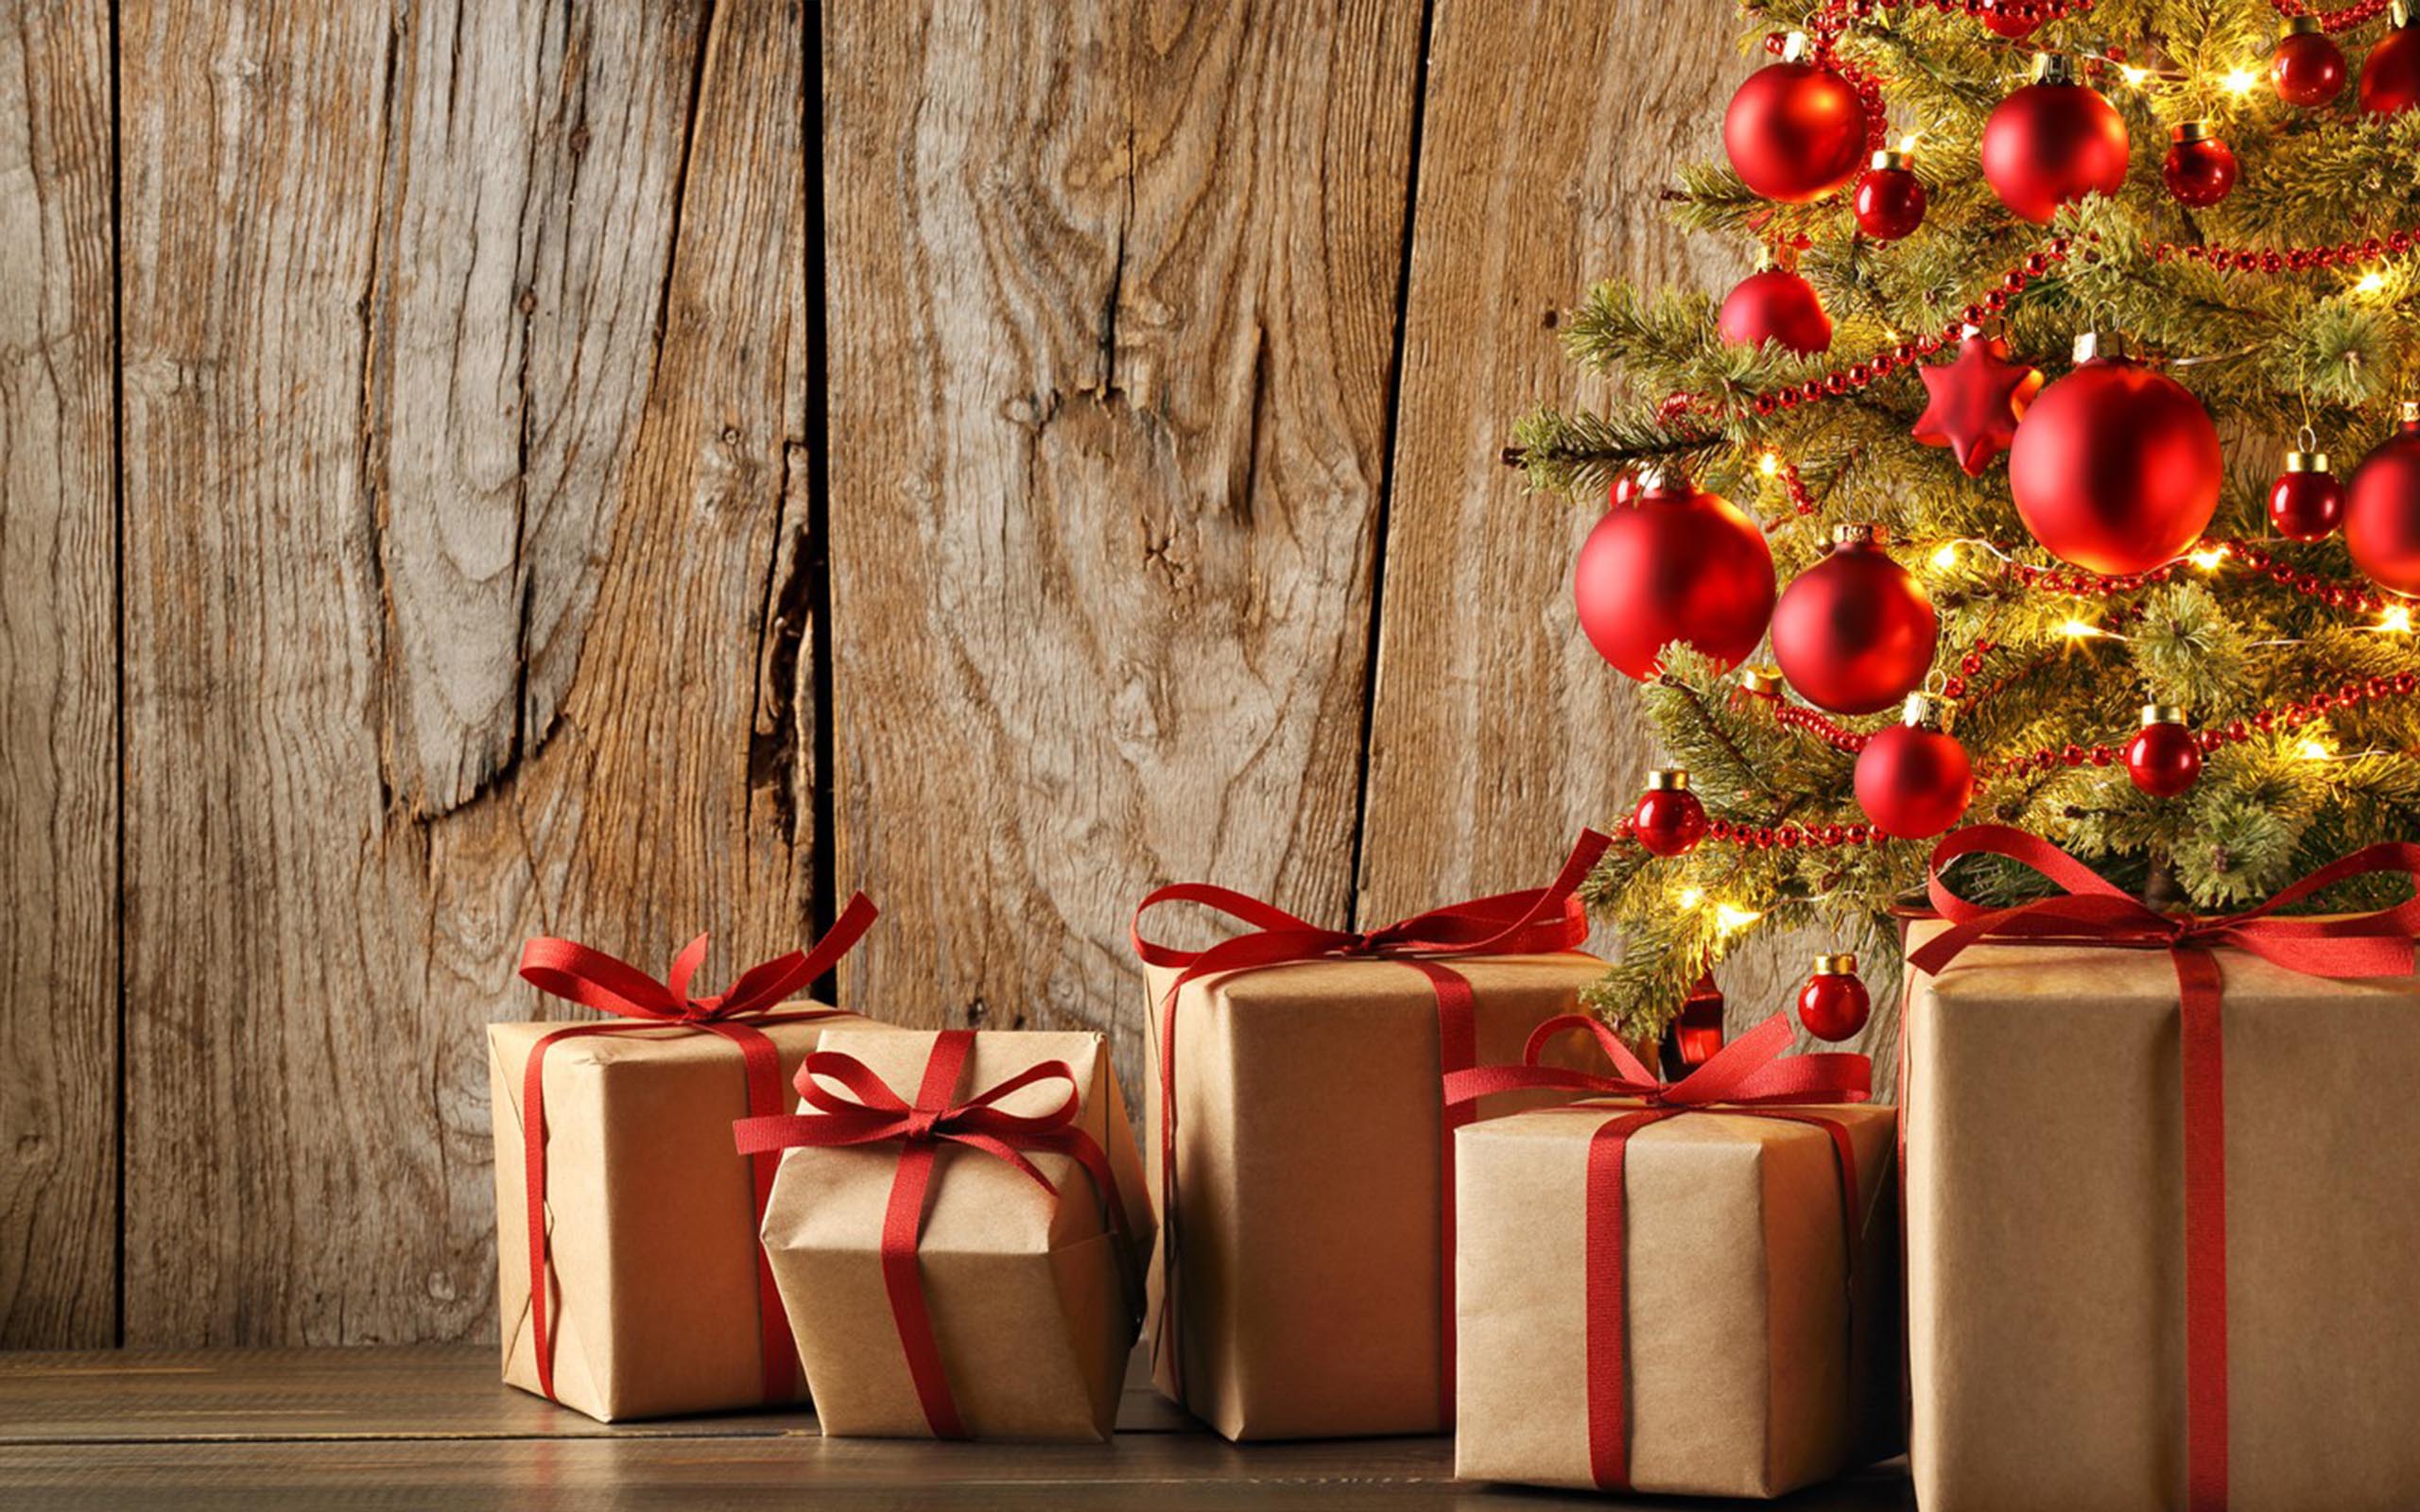 Фото бесплатно праздник, рождественская елка, подарки под елкой